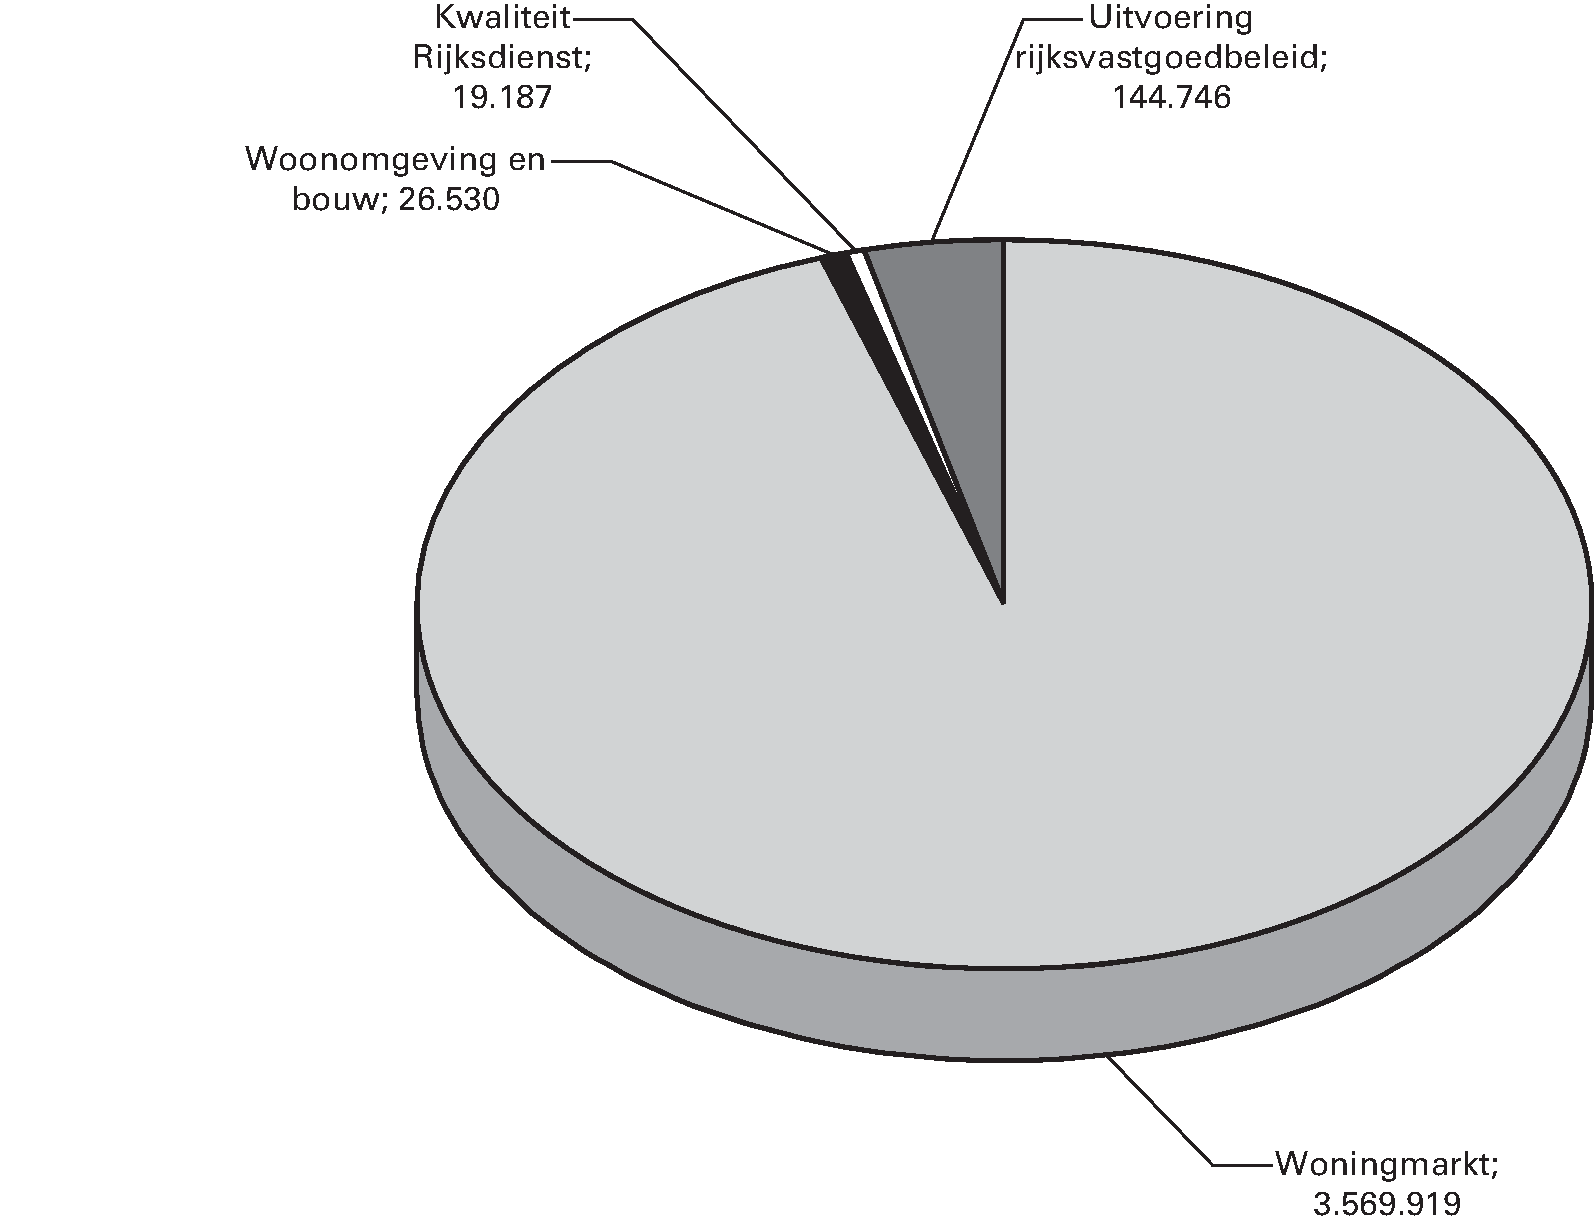 Uitgaven naar beleidsterrein (x € 1.000)